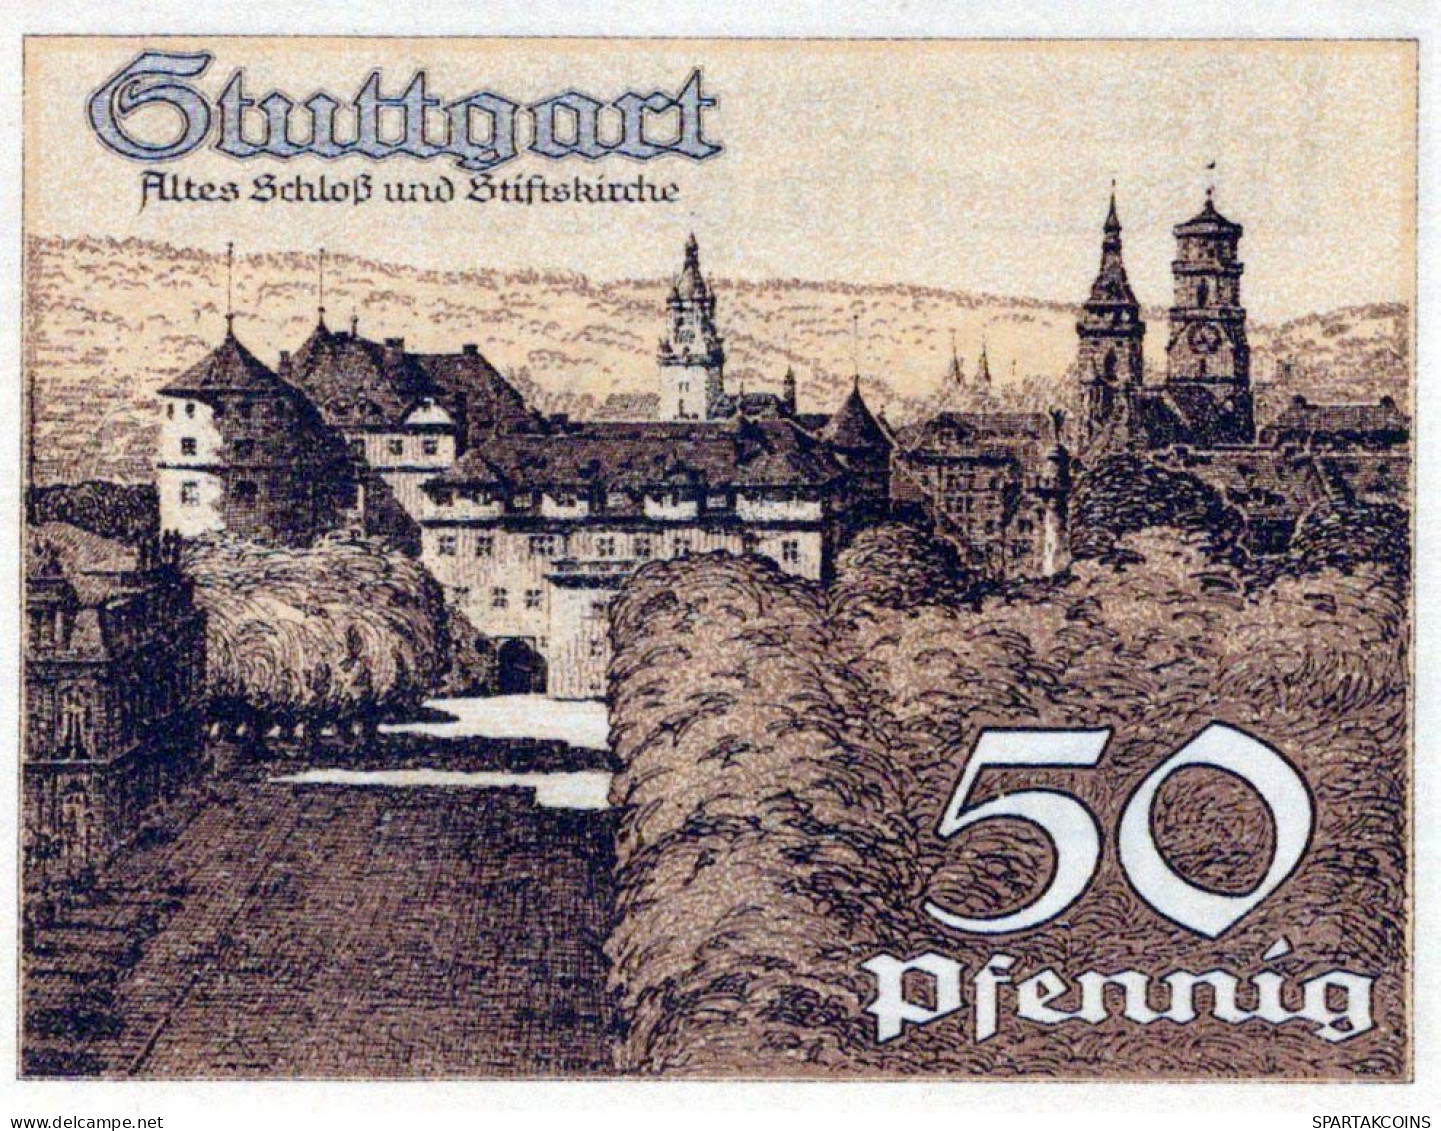 50 PFENNIG 1921 Stadt STUTTGART Württemberg UNC DEUTSCHLAND Notgeld #PC417 - [11] Lokale Uitgaven